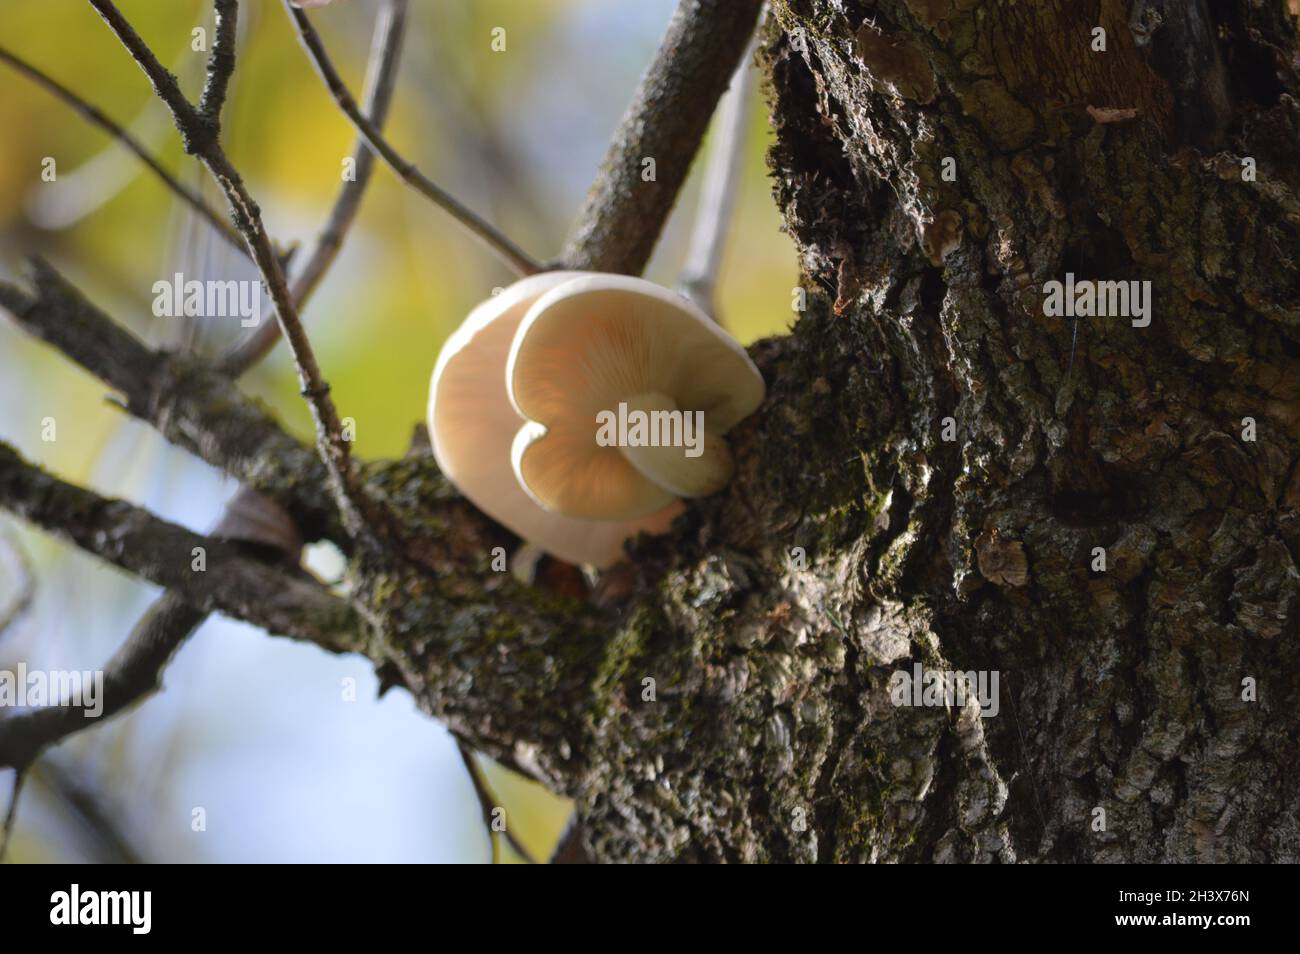 Mushroom on tree, fall season Stock Photo